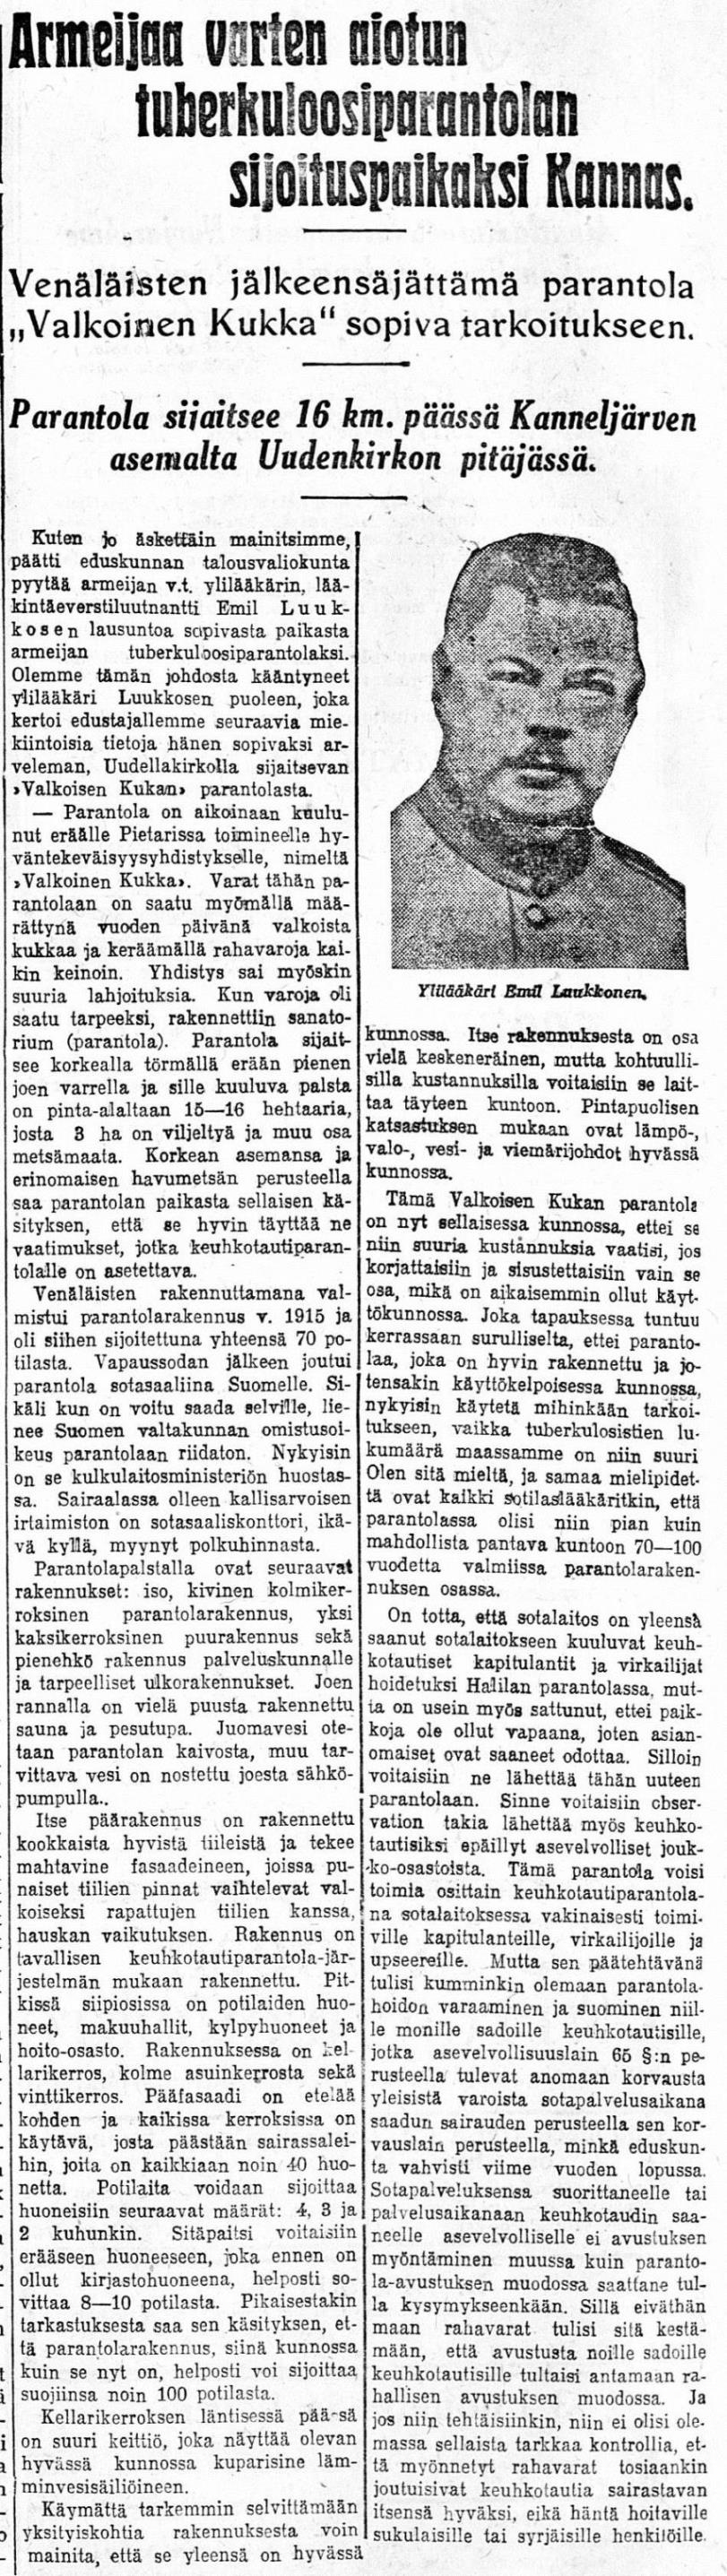 14.03.1926 Uusi Suomi no 61.jpg